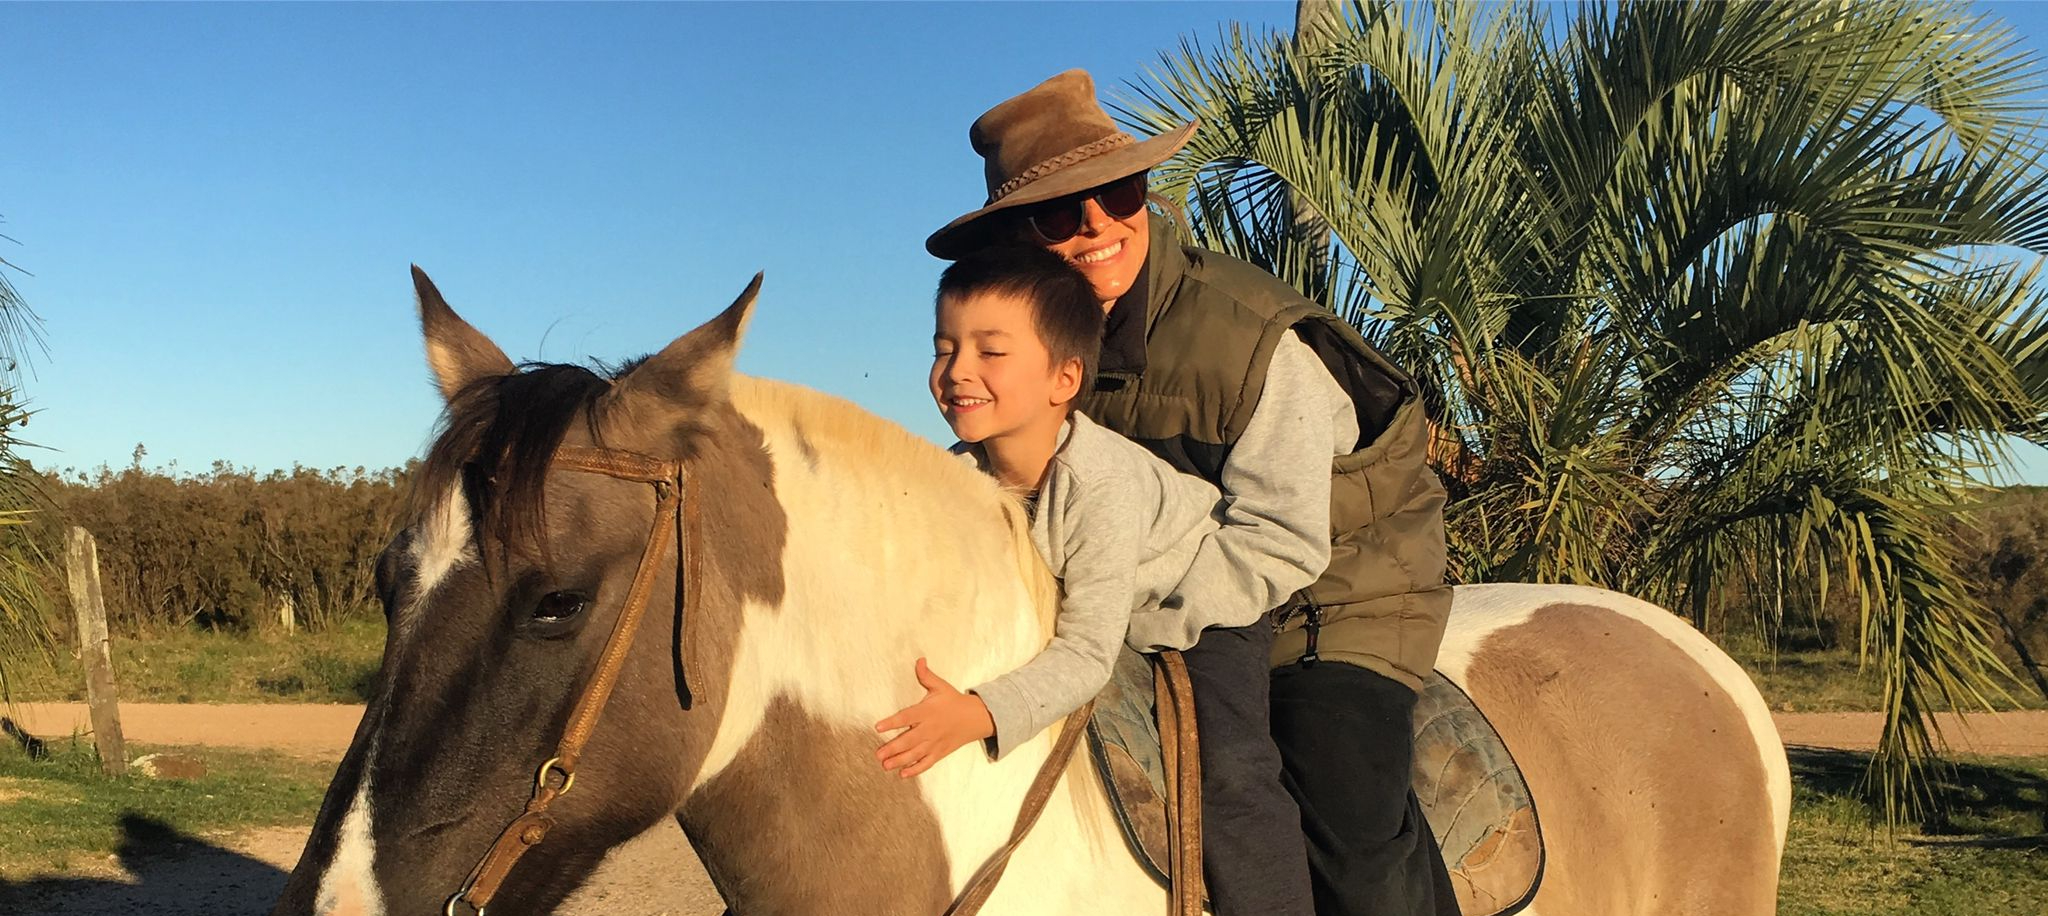 Alfonsina Maldonado y sobrino montados a un caballo.